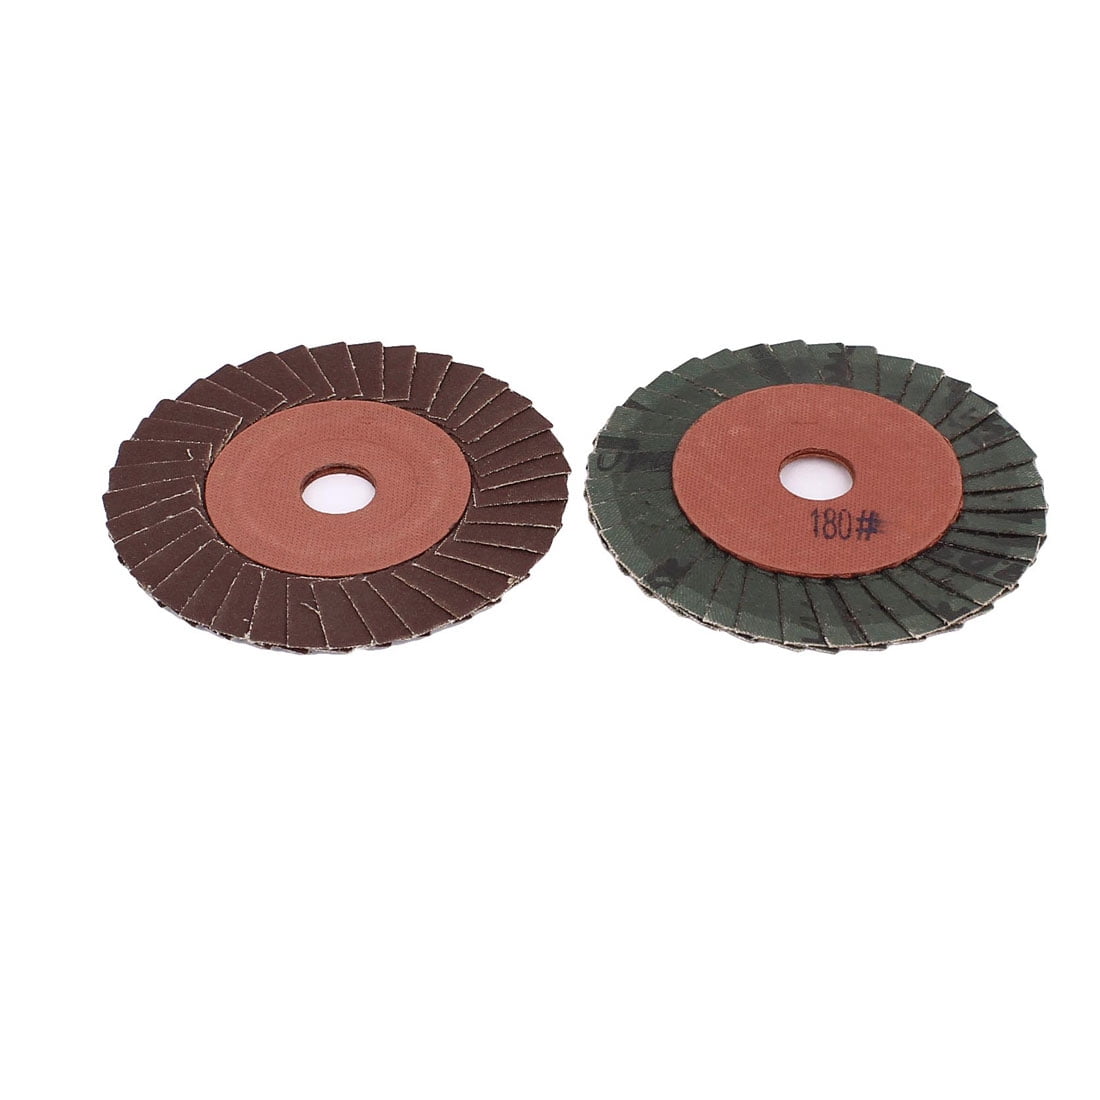 Toolman 10pcs Sanding Flap Disc Universal Fit 4" 1/2" 60 Grit For Metal 